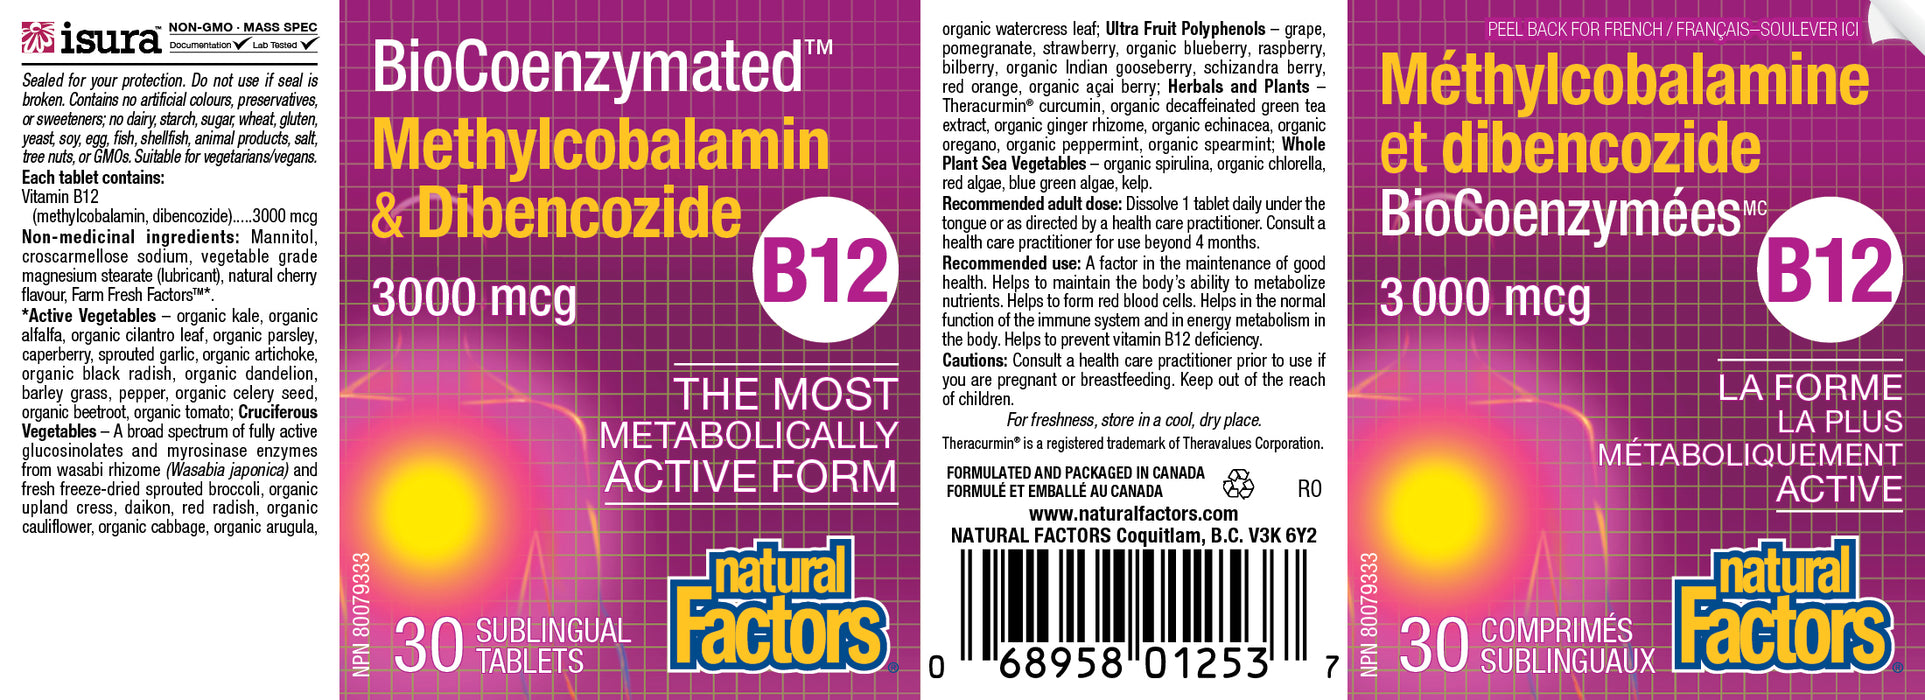 Natural Factors B12 Methylcolobalamin & Dibencozide - 3000mcg 30 Sublingual Tablets